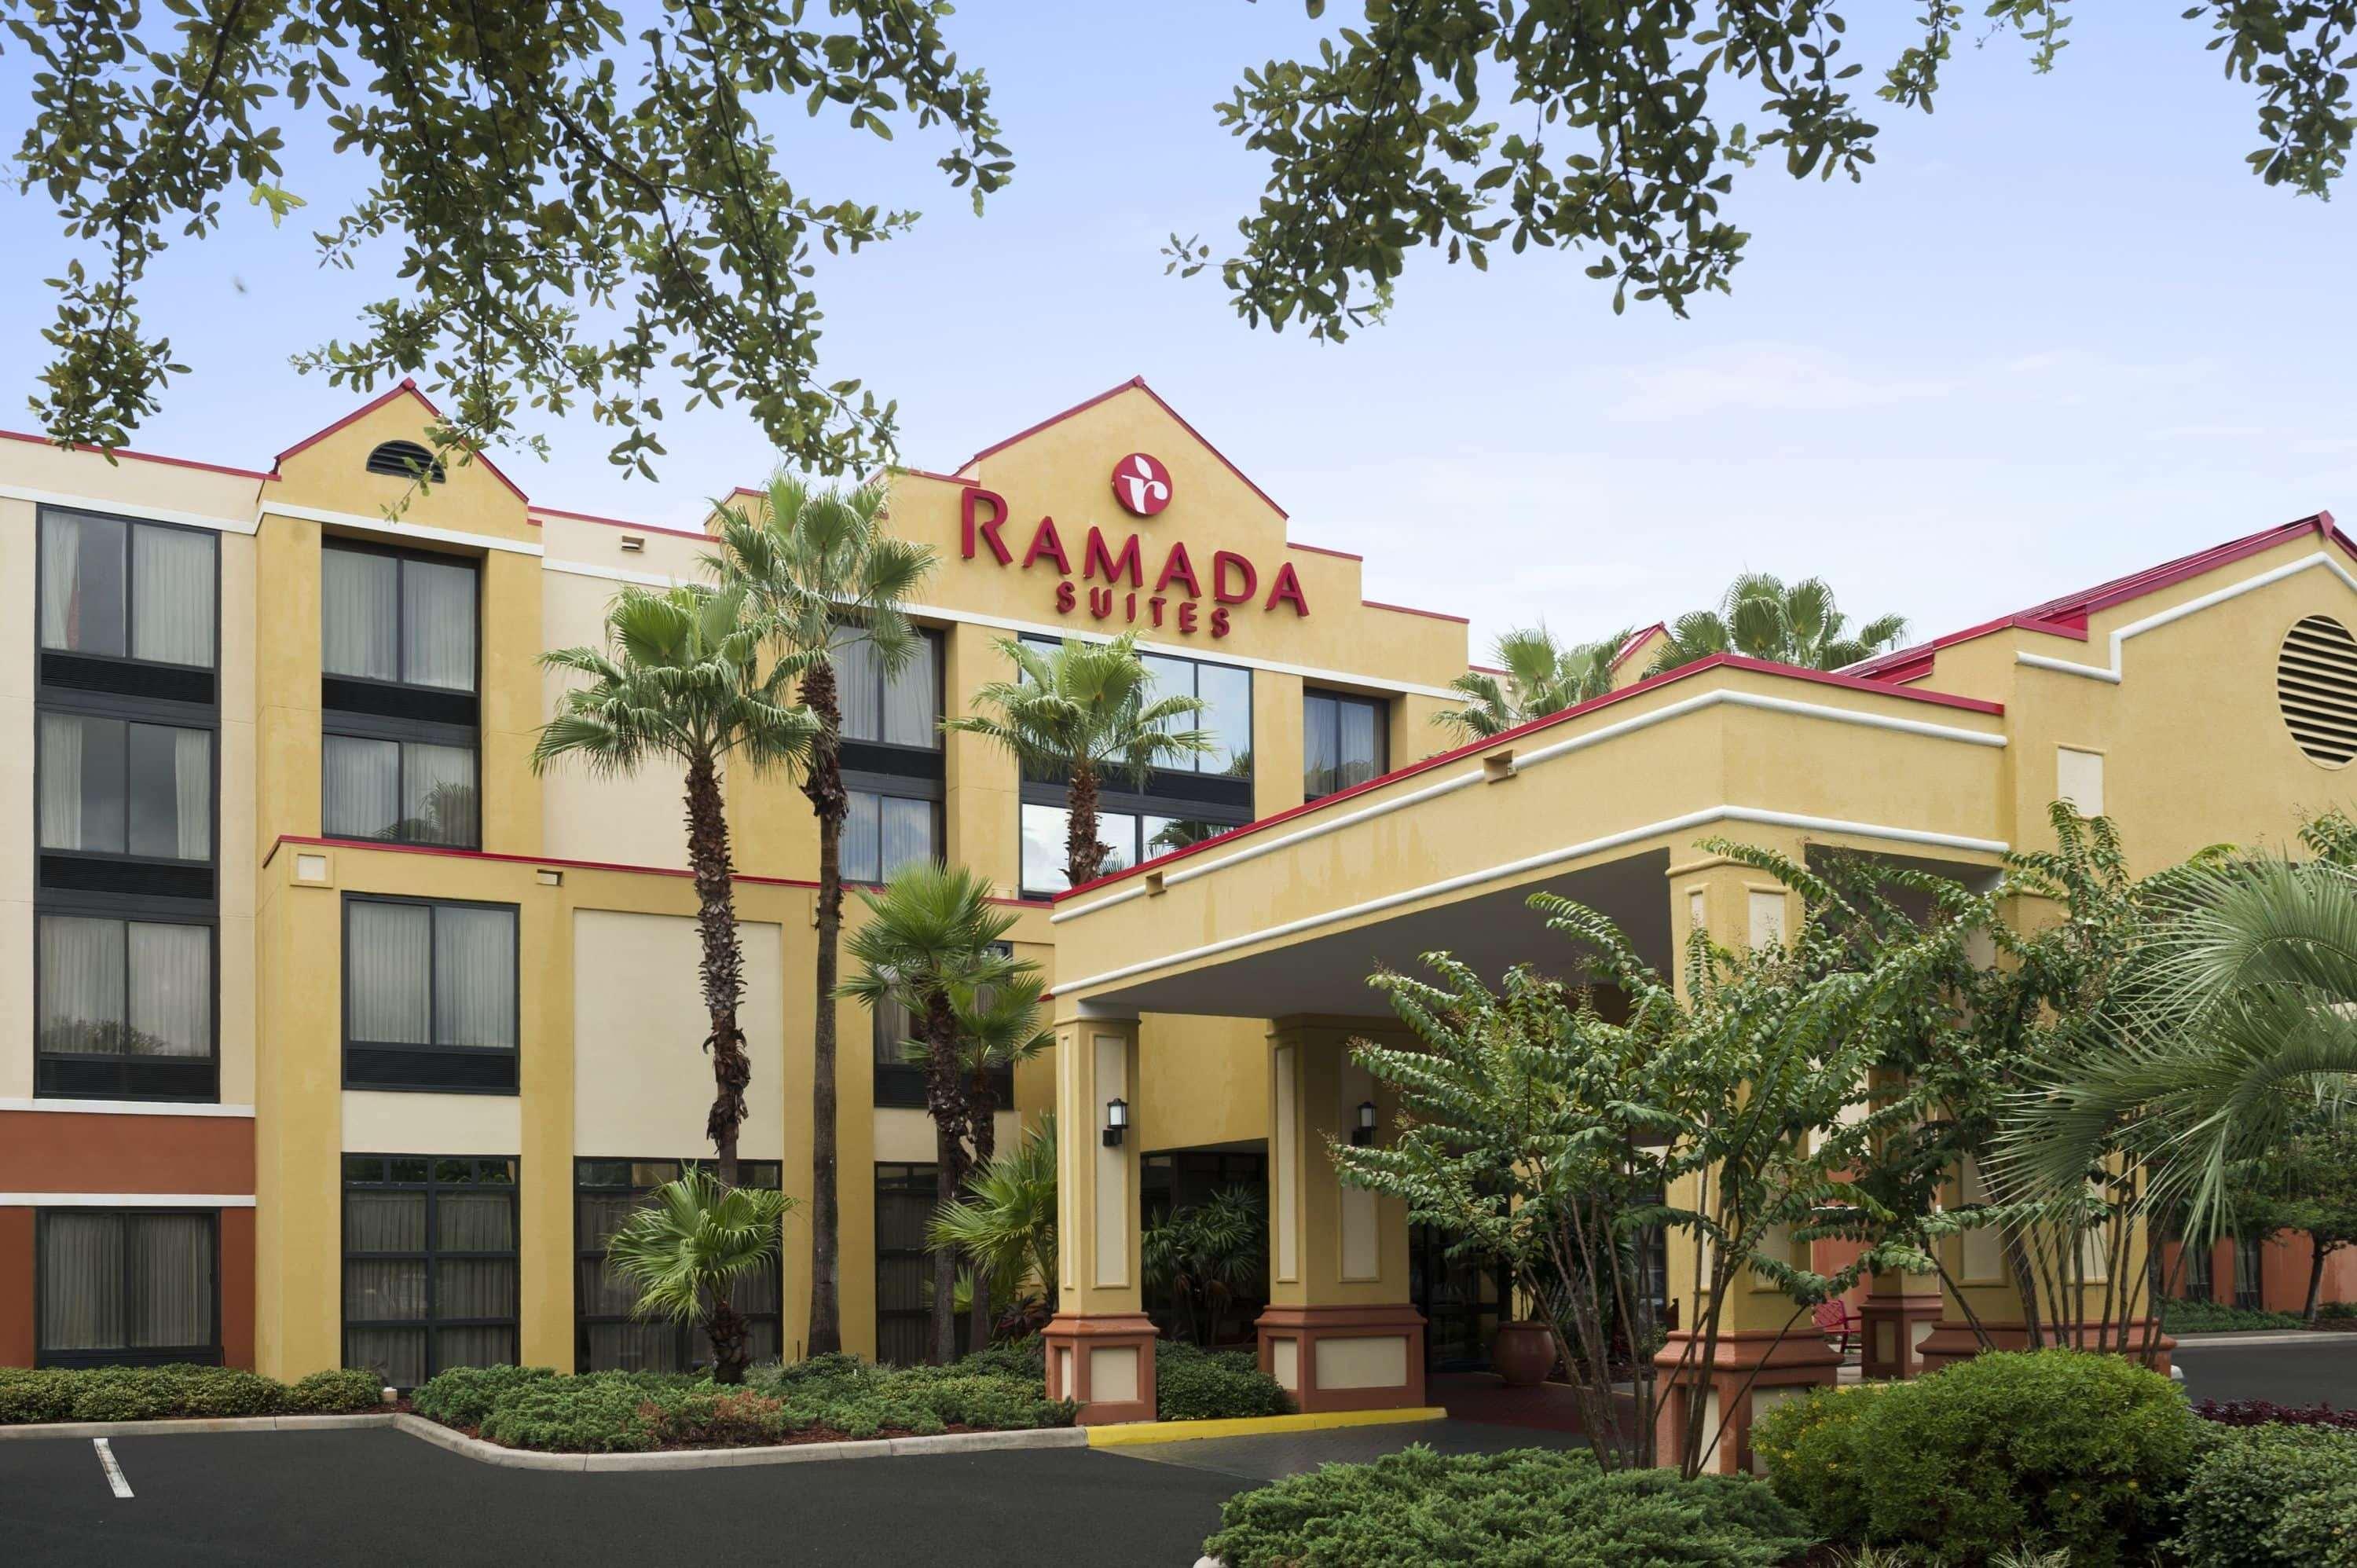 Ramada Suites Orlando Aiport